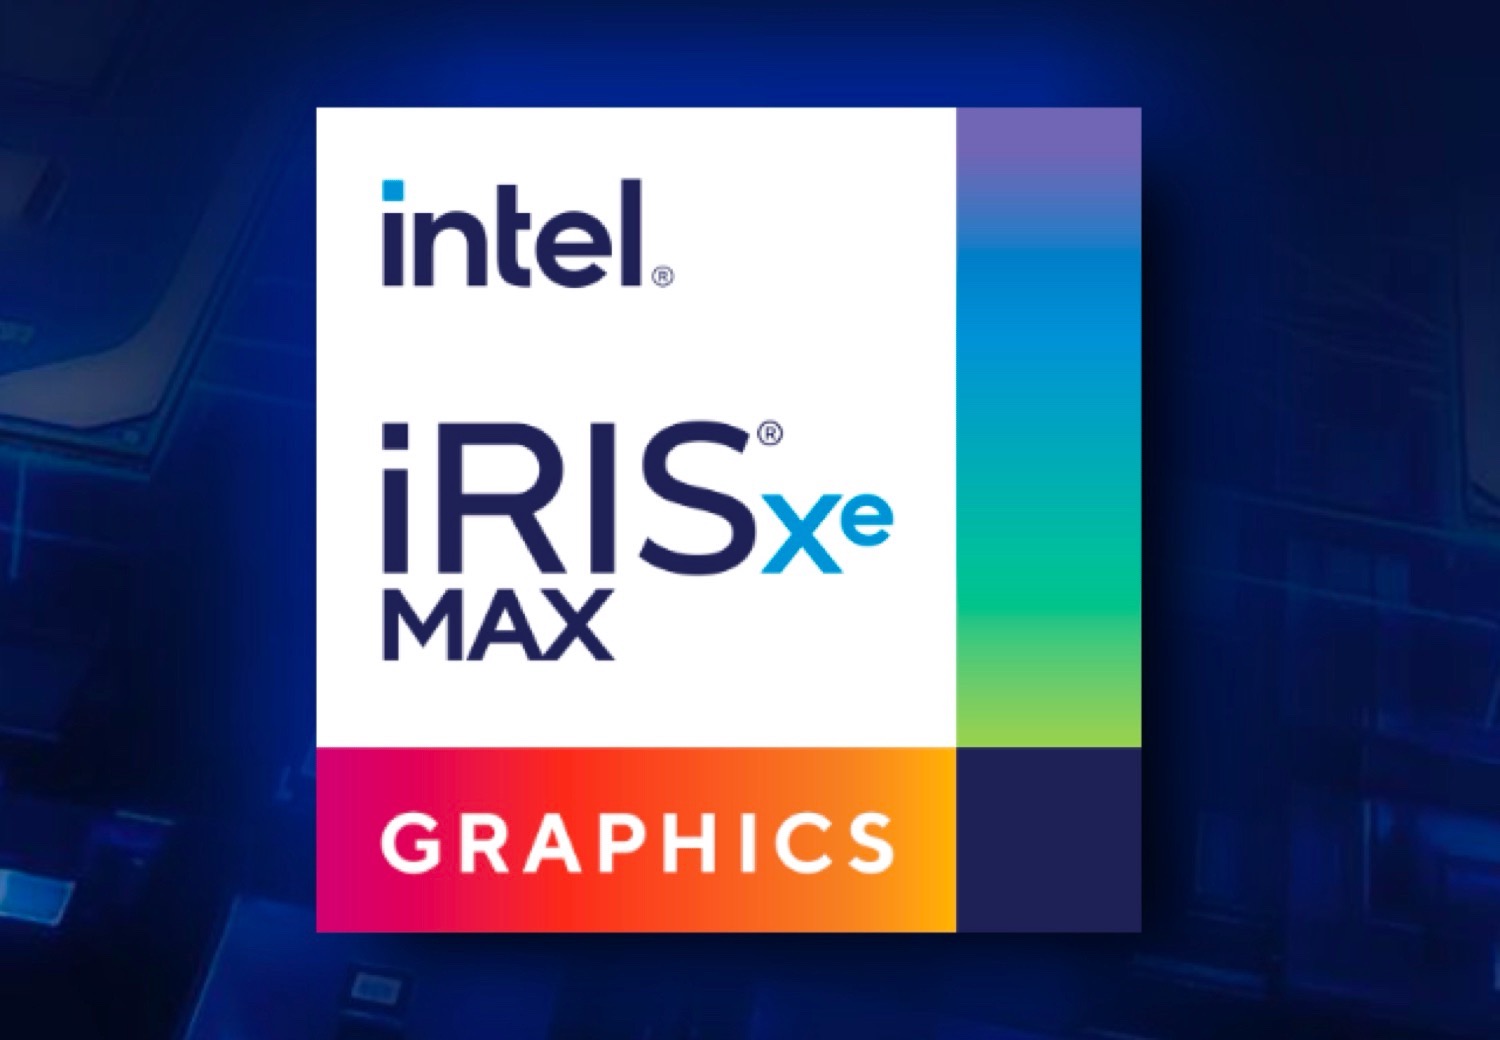 Die ersten Notebooks mit Intel Iris Xe Max kommen offenbar erst ...